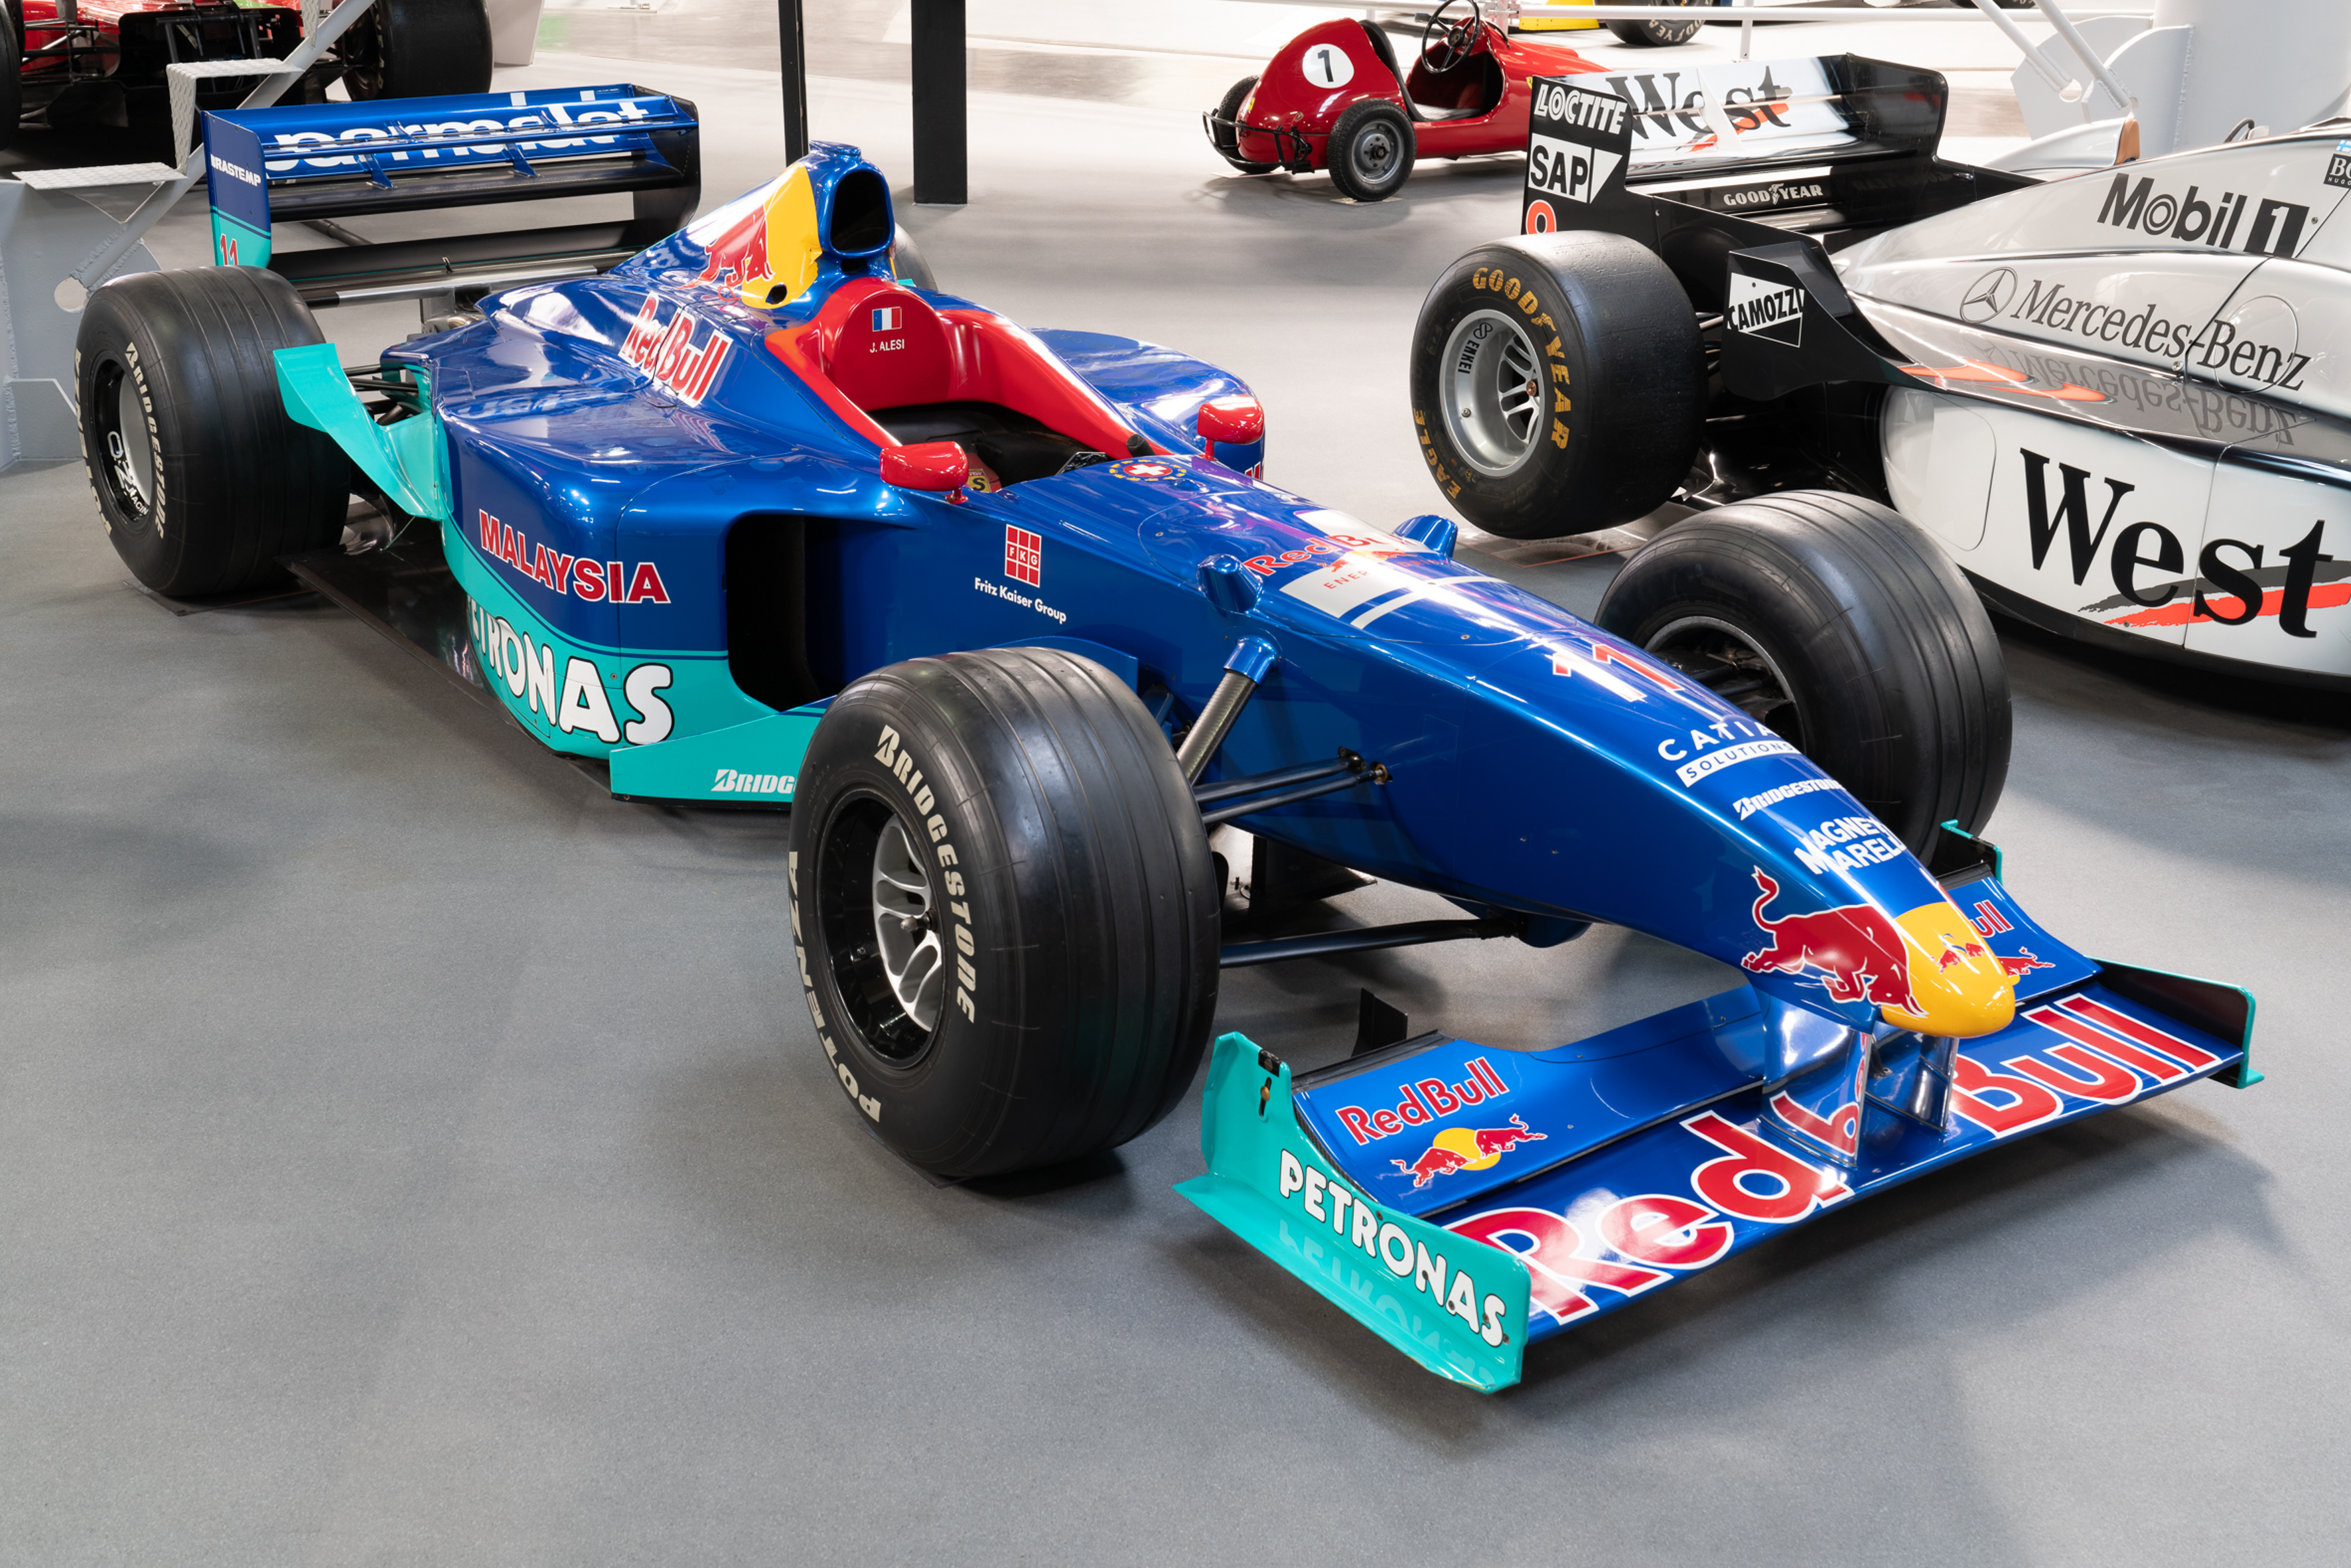 Formel-1 and Motorsport Technik Museum Sinsheim